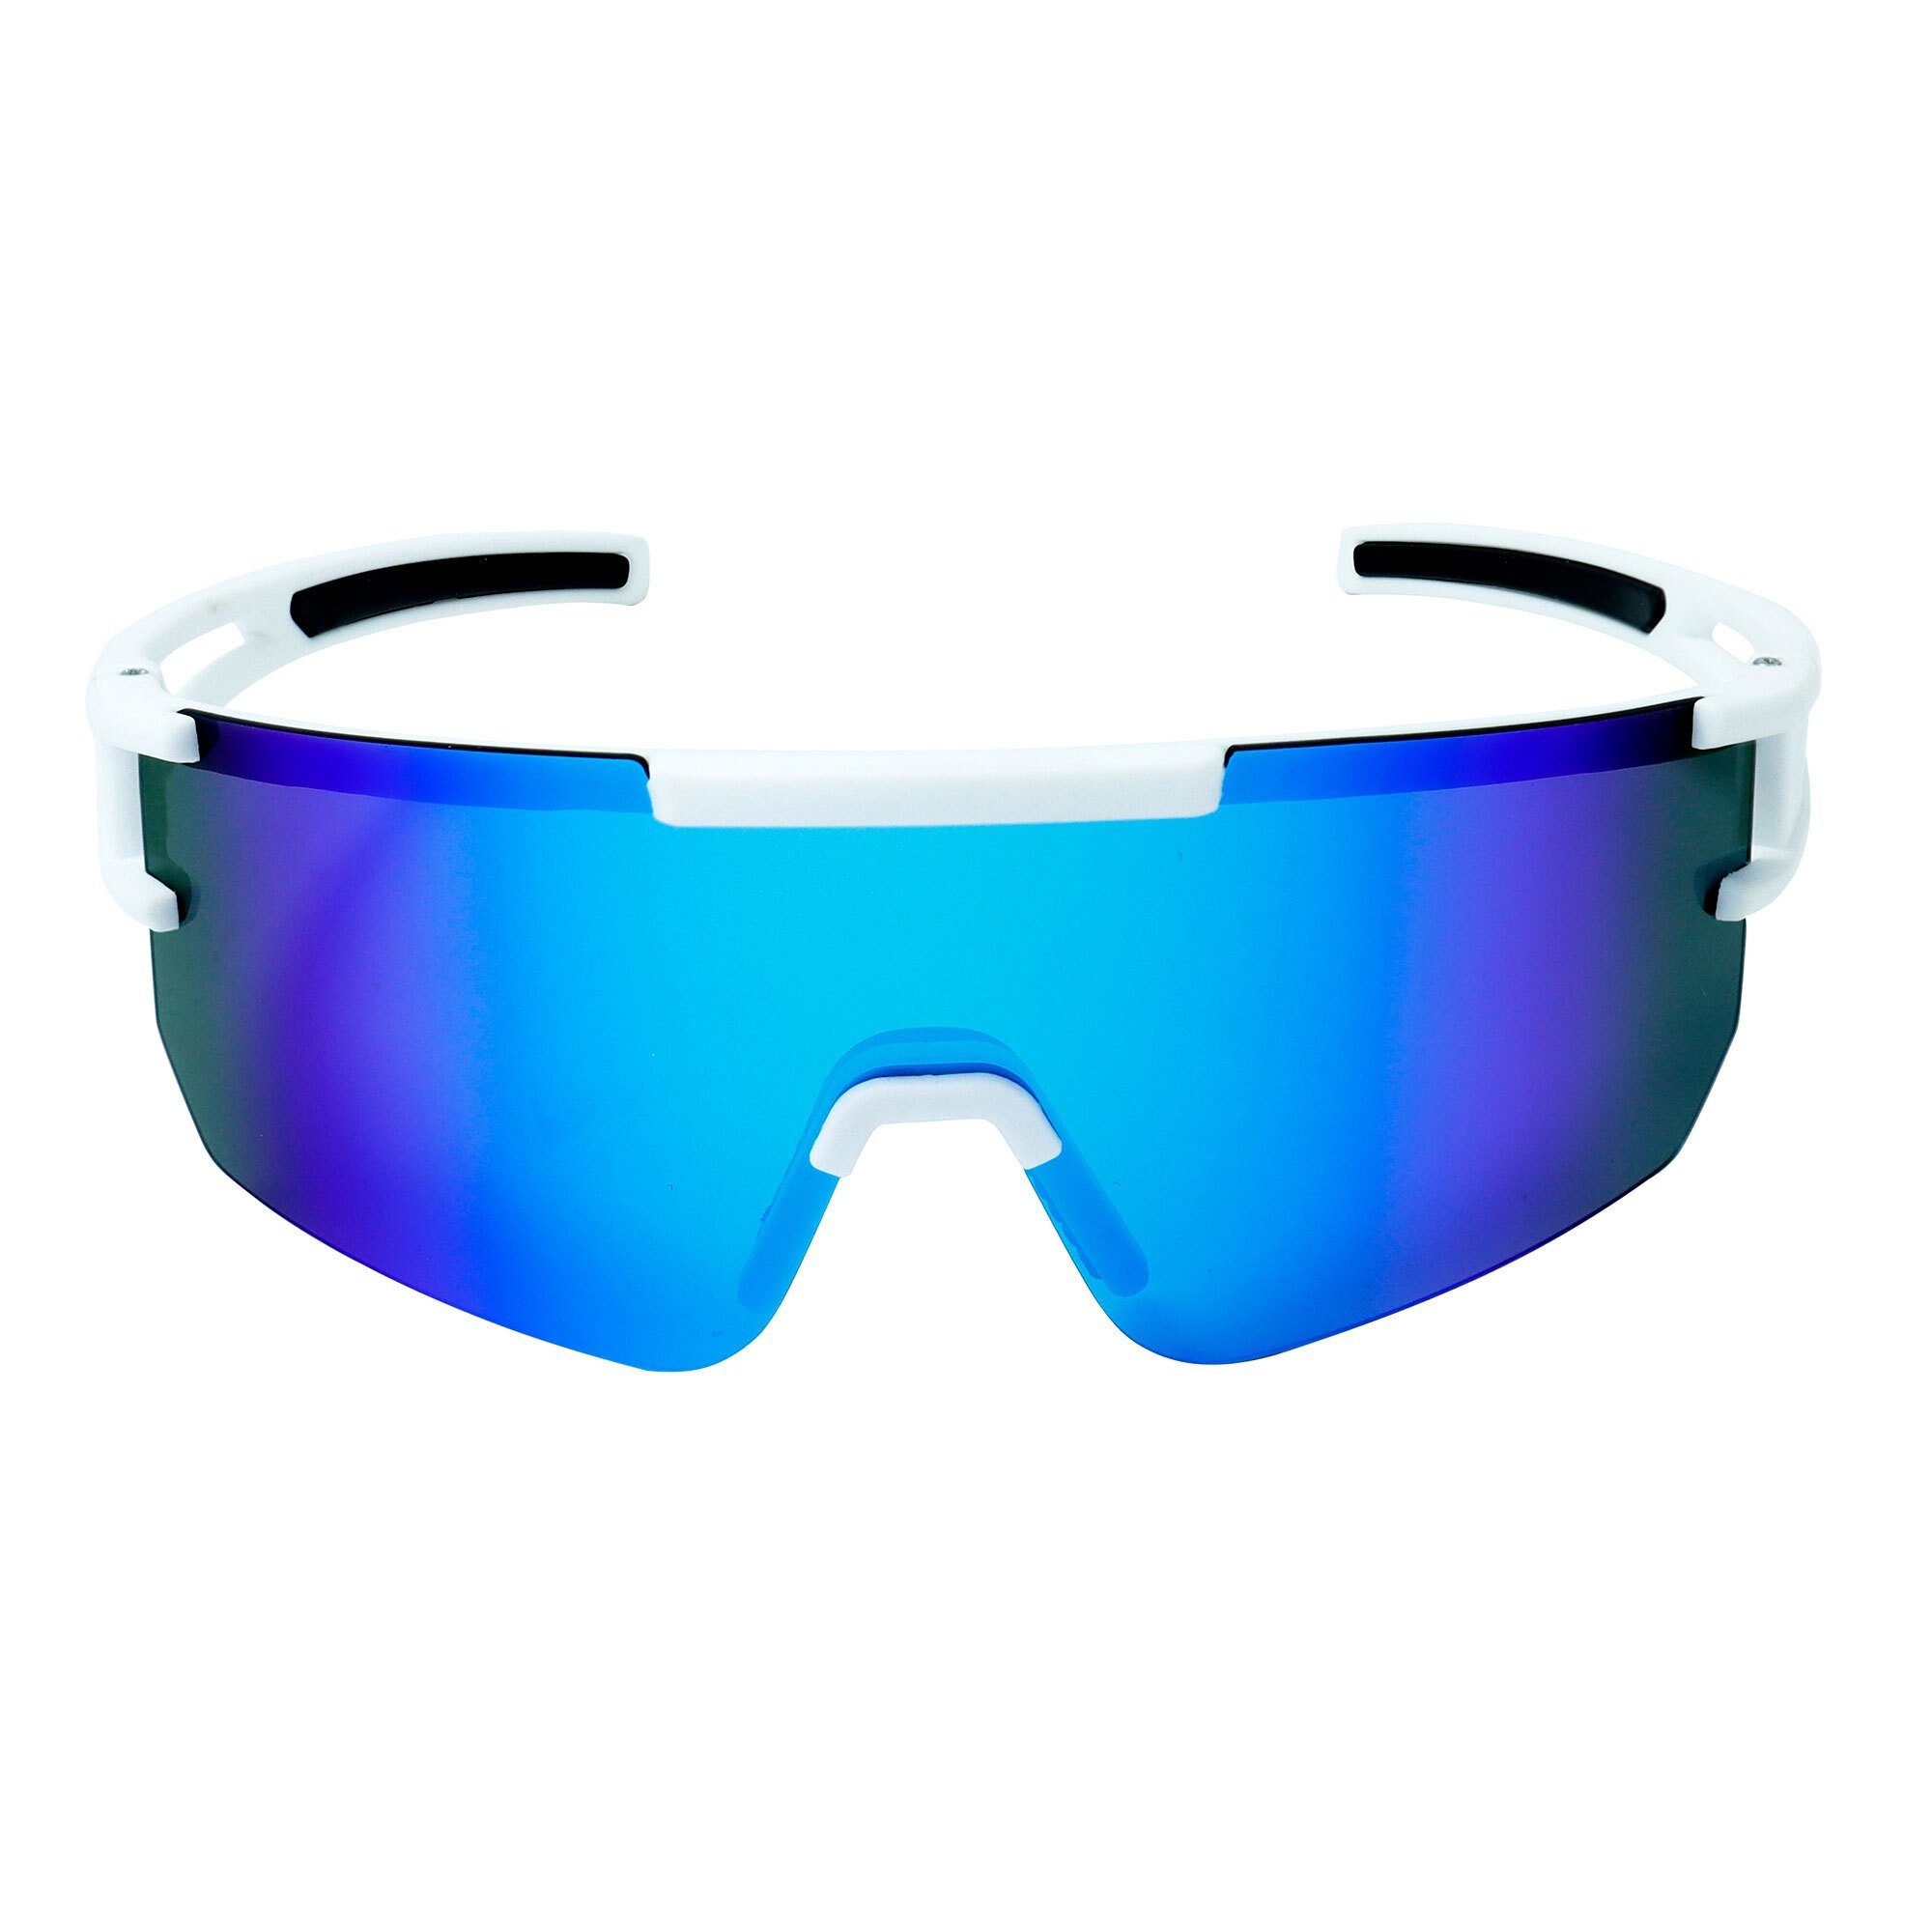 Guter YEAZ Sportbrille bei Schutz Sicht SUNSPARK bright optimierter sport-sonnenbrille white/blue,